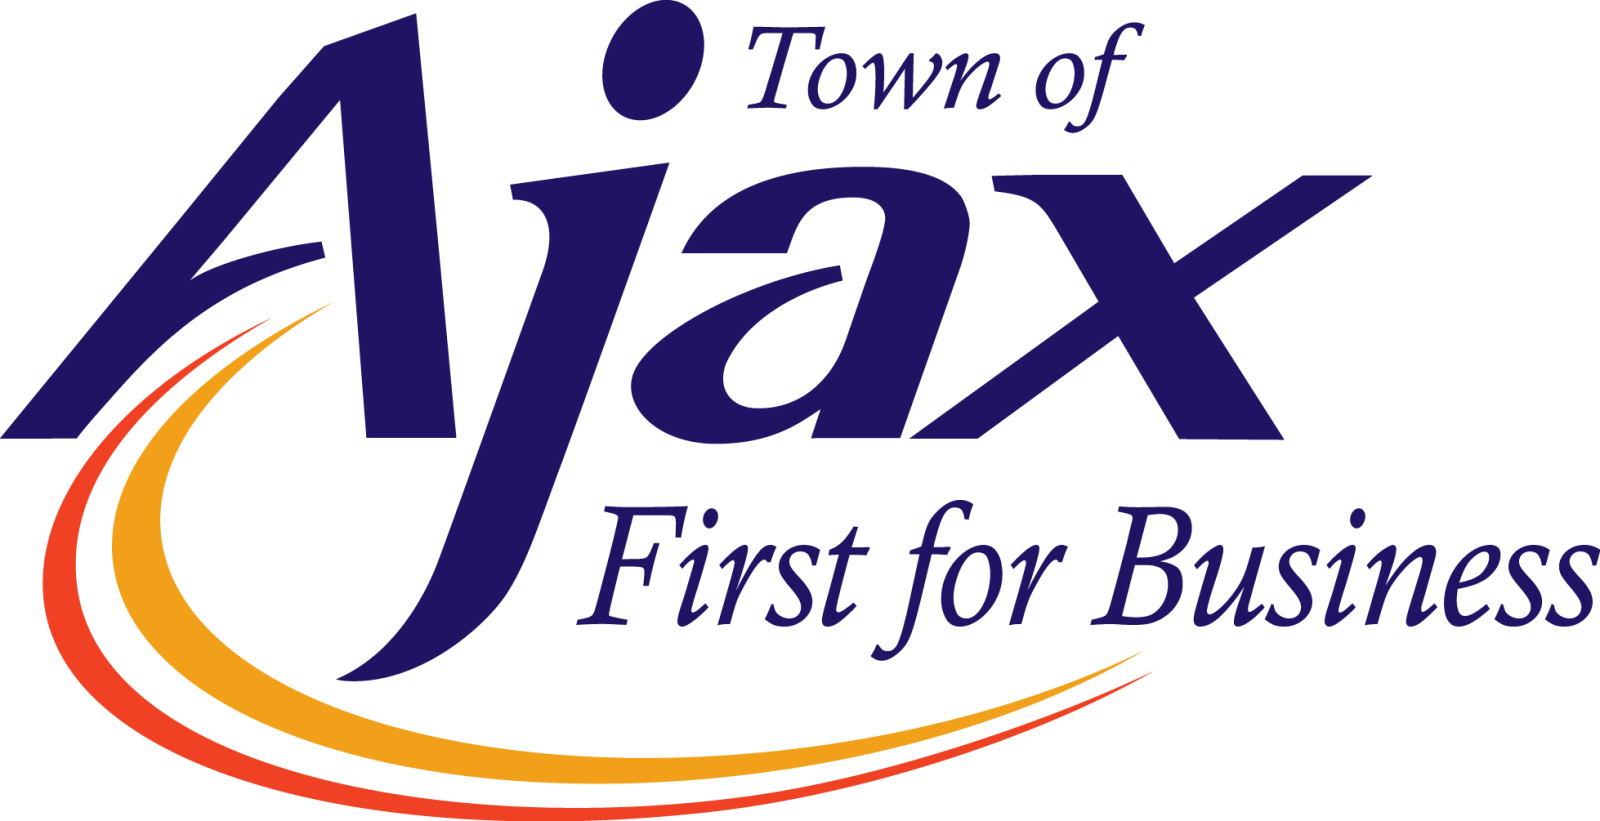 Town of Ajax